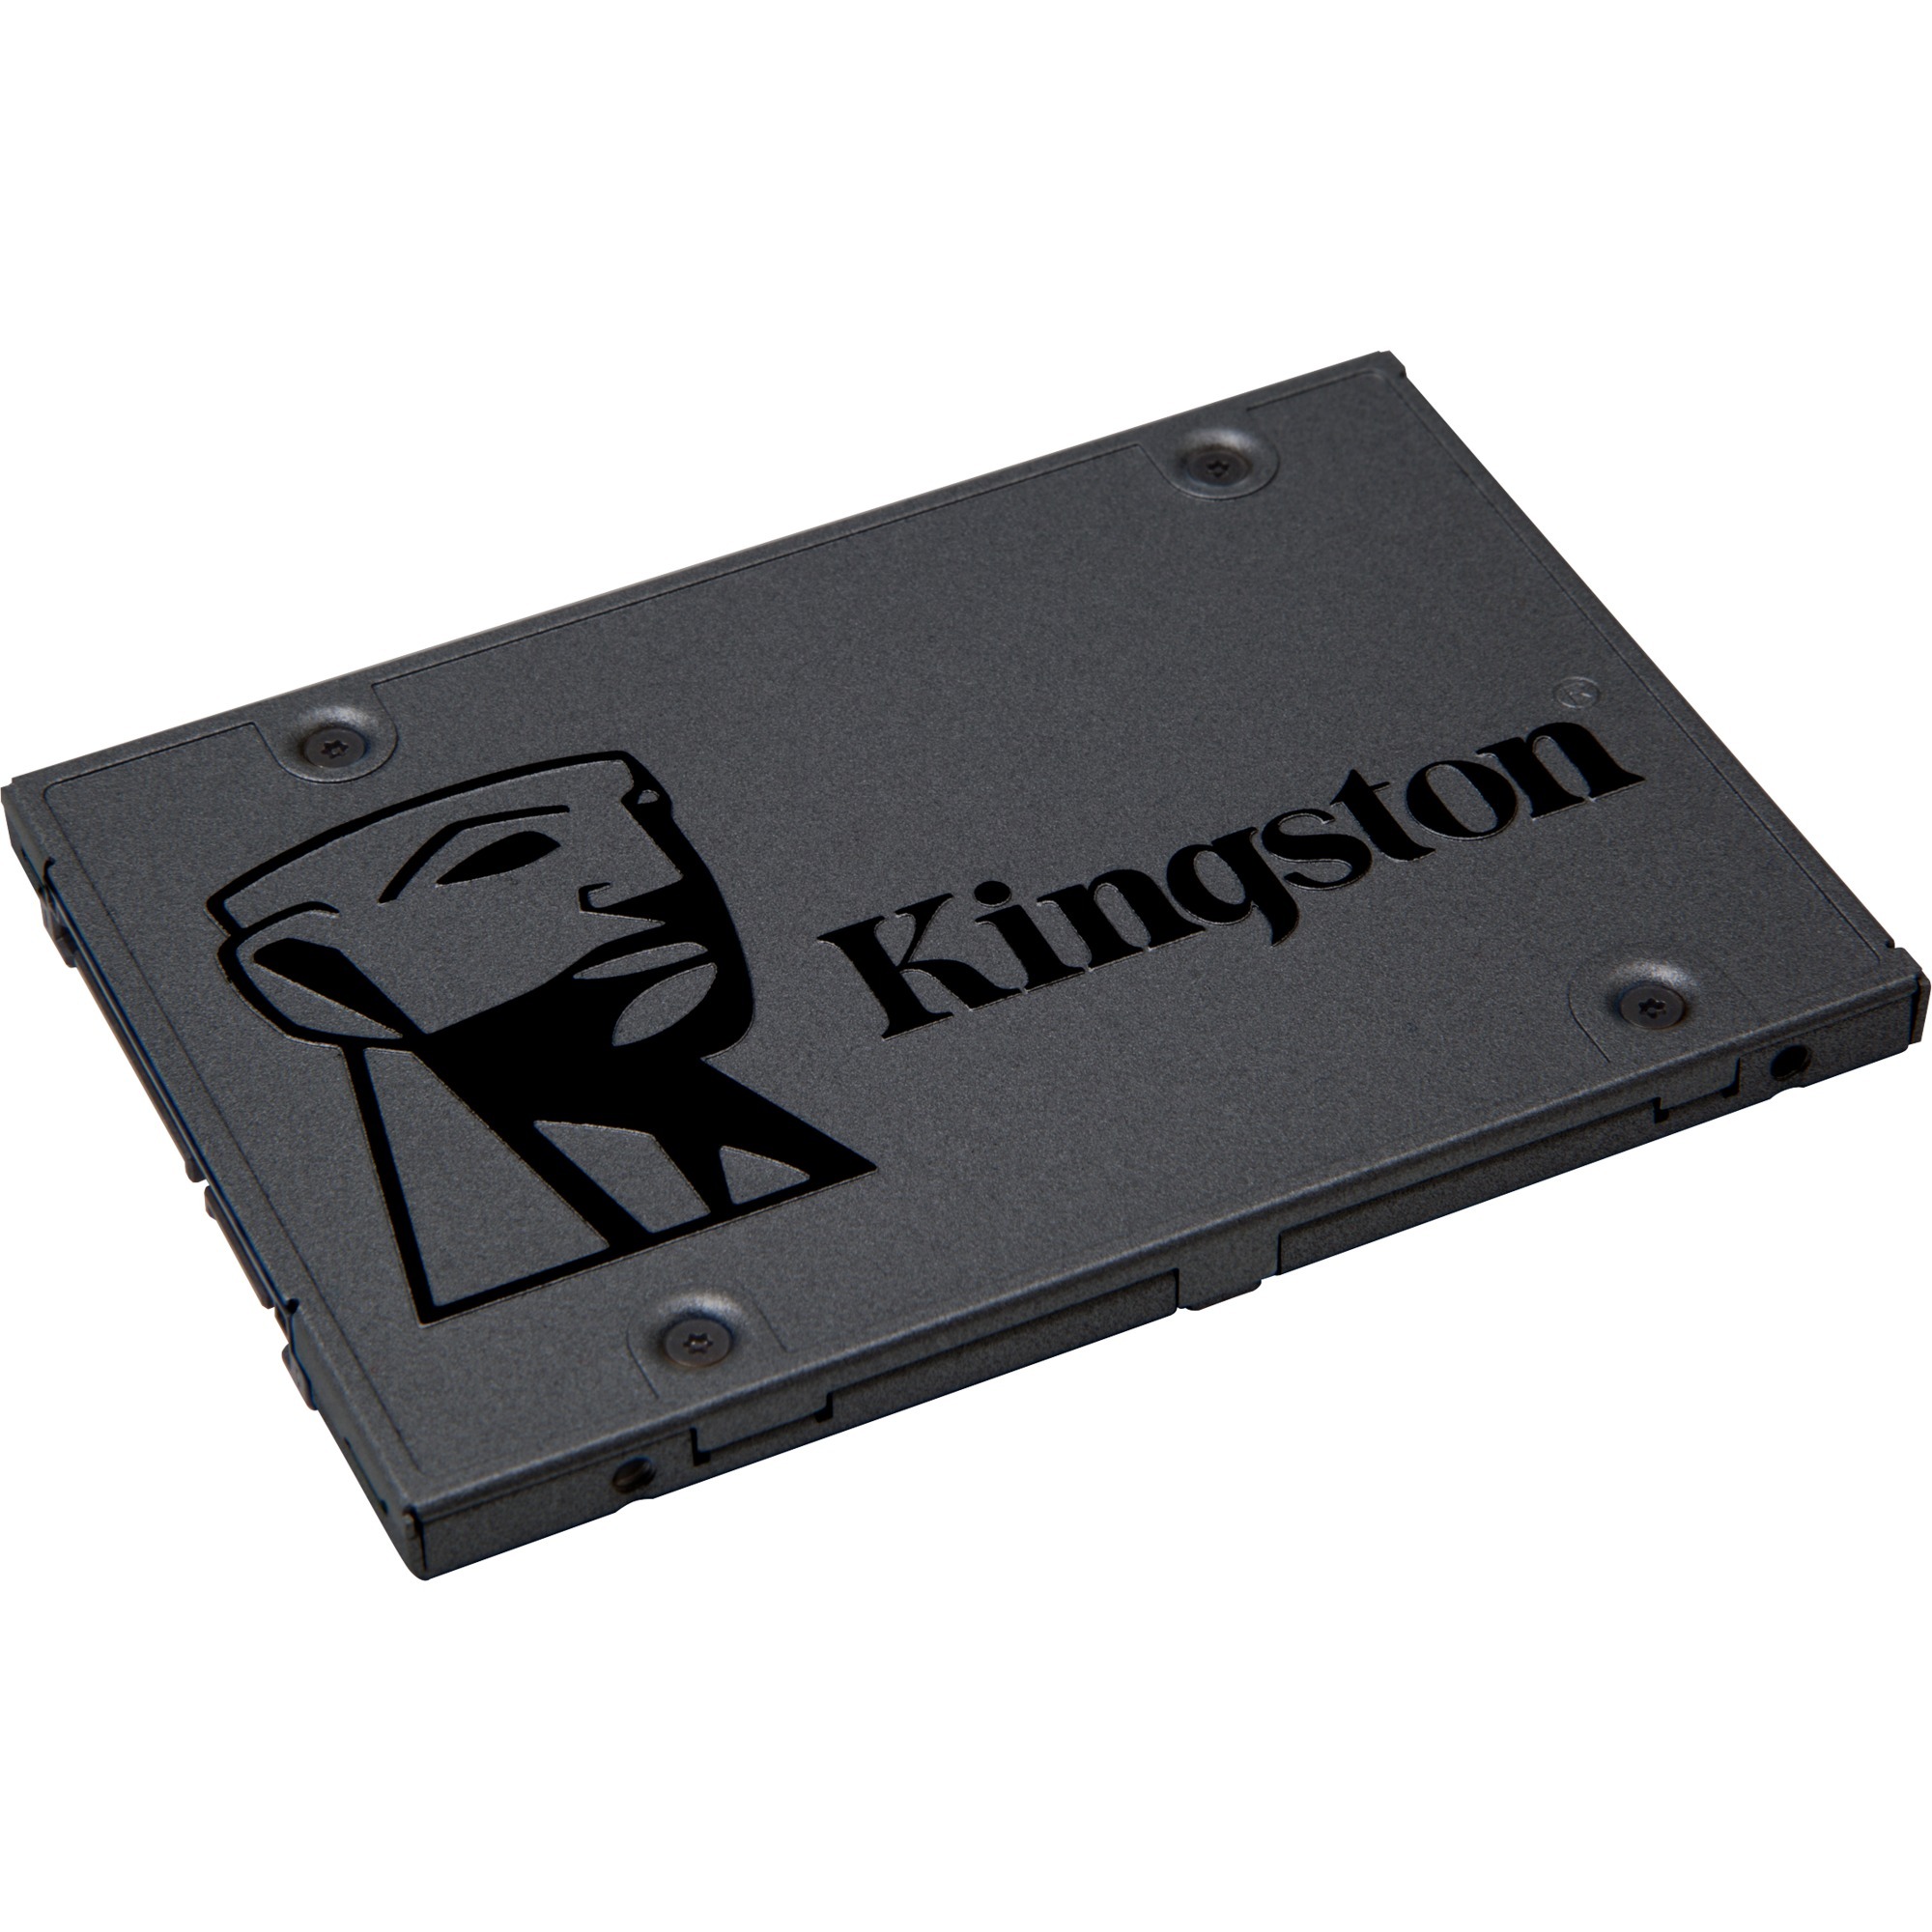 Image of Alternate - A400 960 GB, SSD online einkaufen bei Alternate